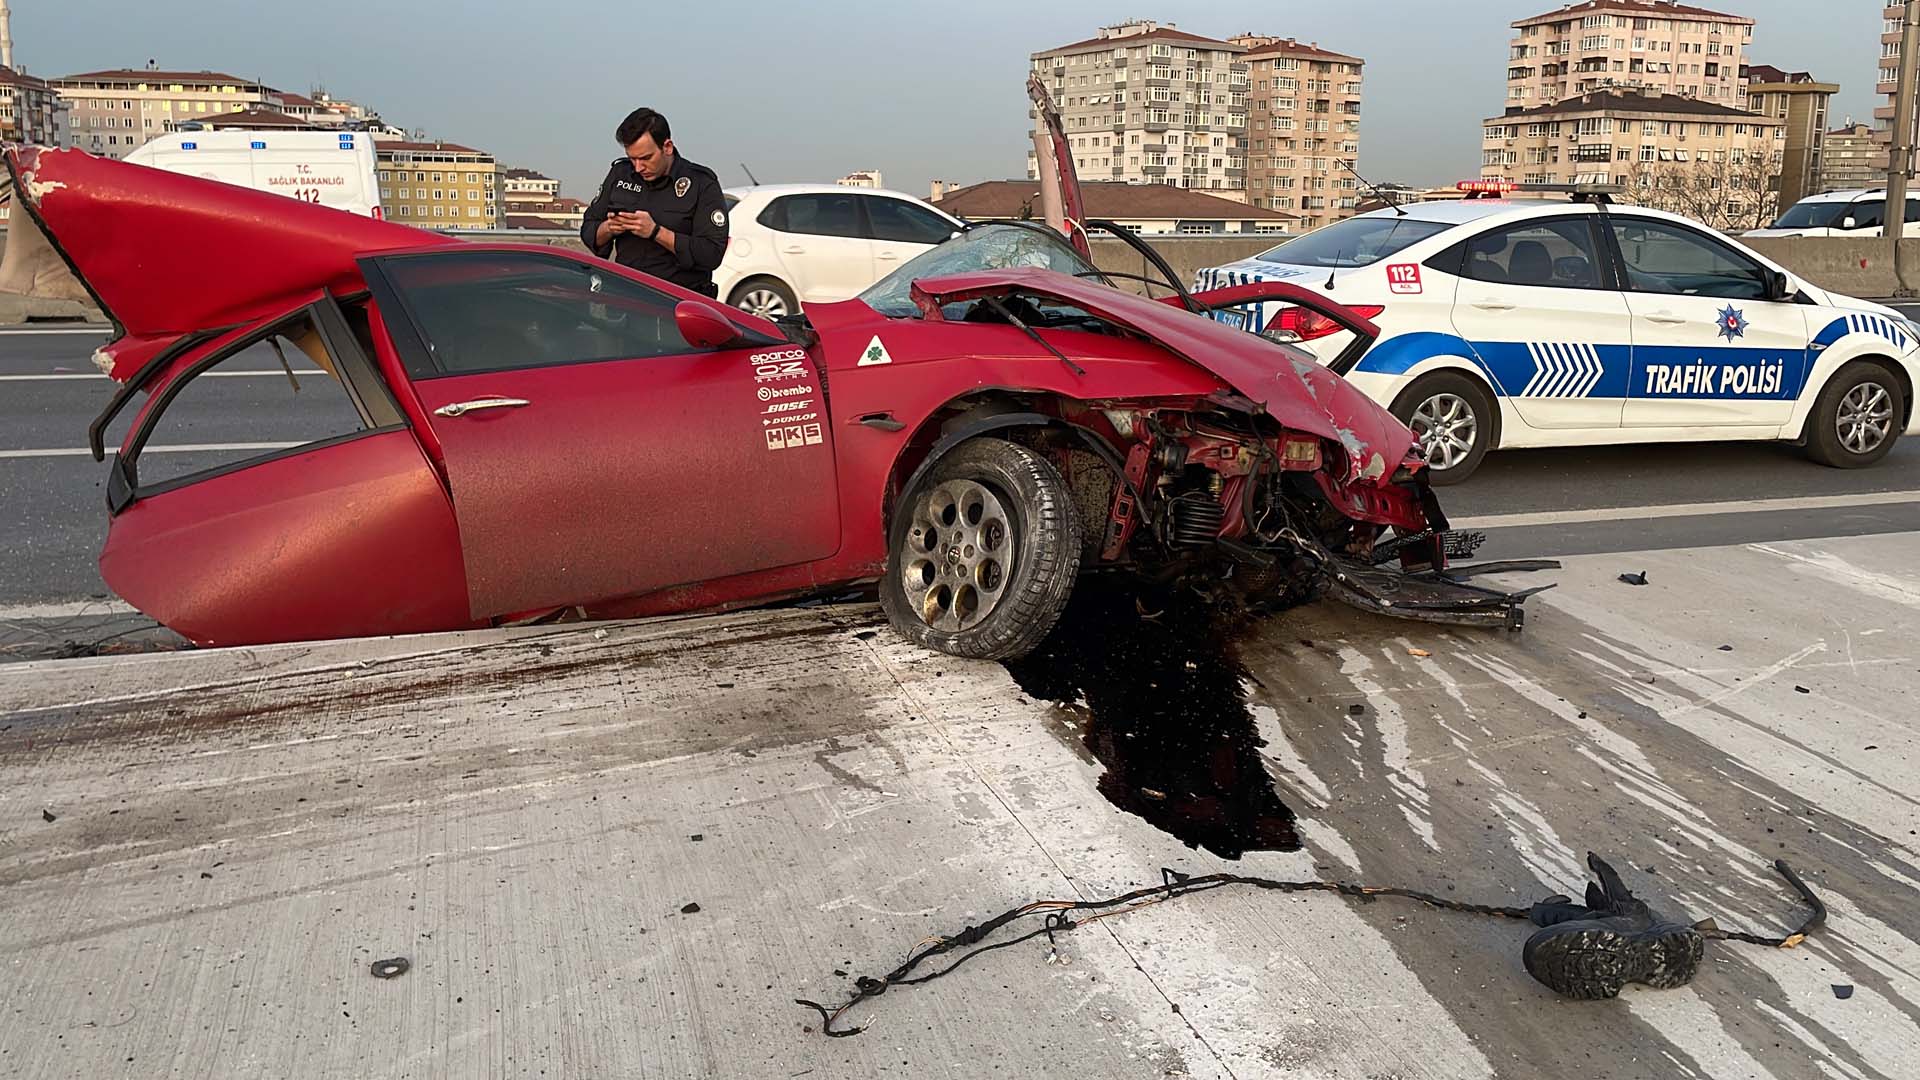 İstanbul Maltepe'de korkunç kaza! Reklam panosuna çarpan araç ikiye bölündü, sürücü ağır yaralandı 